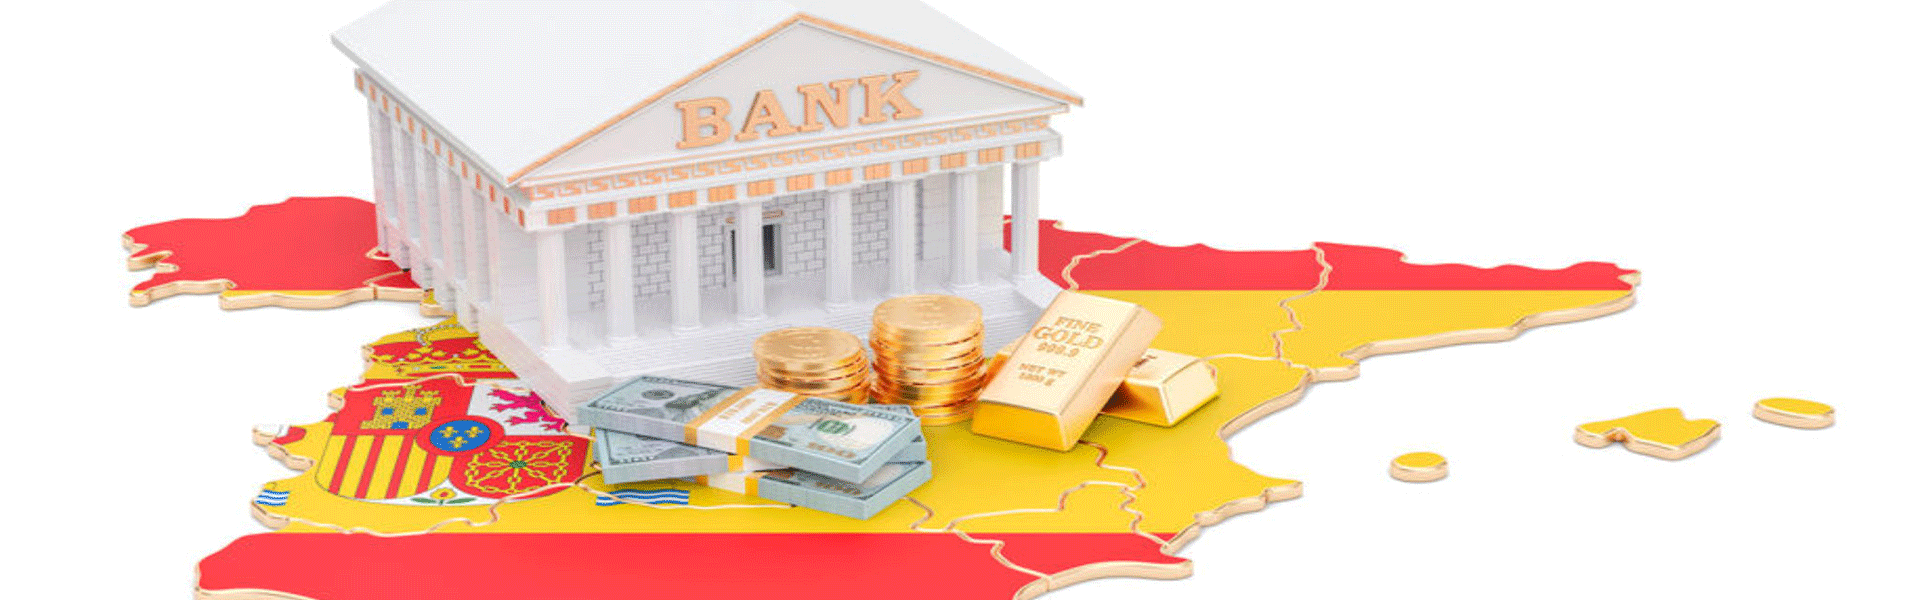 افتتاح حساب بانکی در اسپانیا | پویش تراول